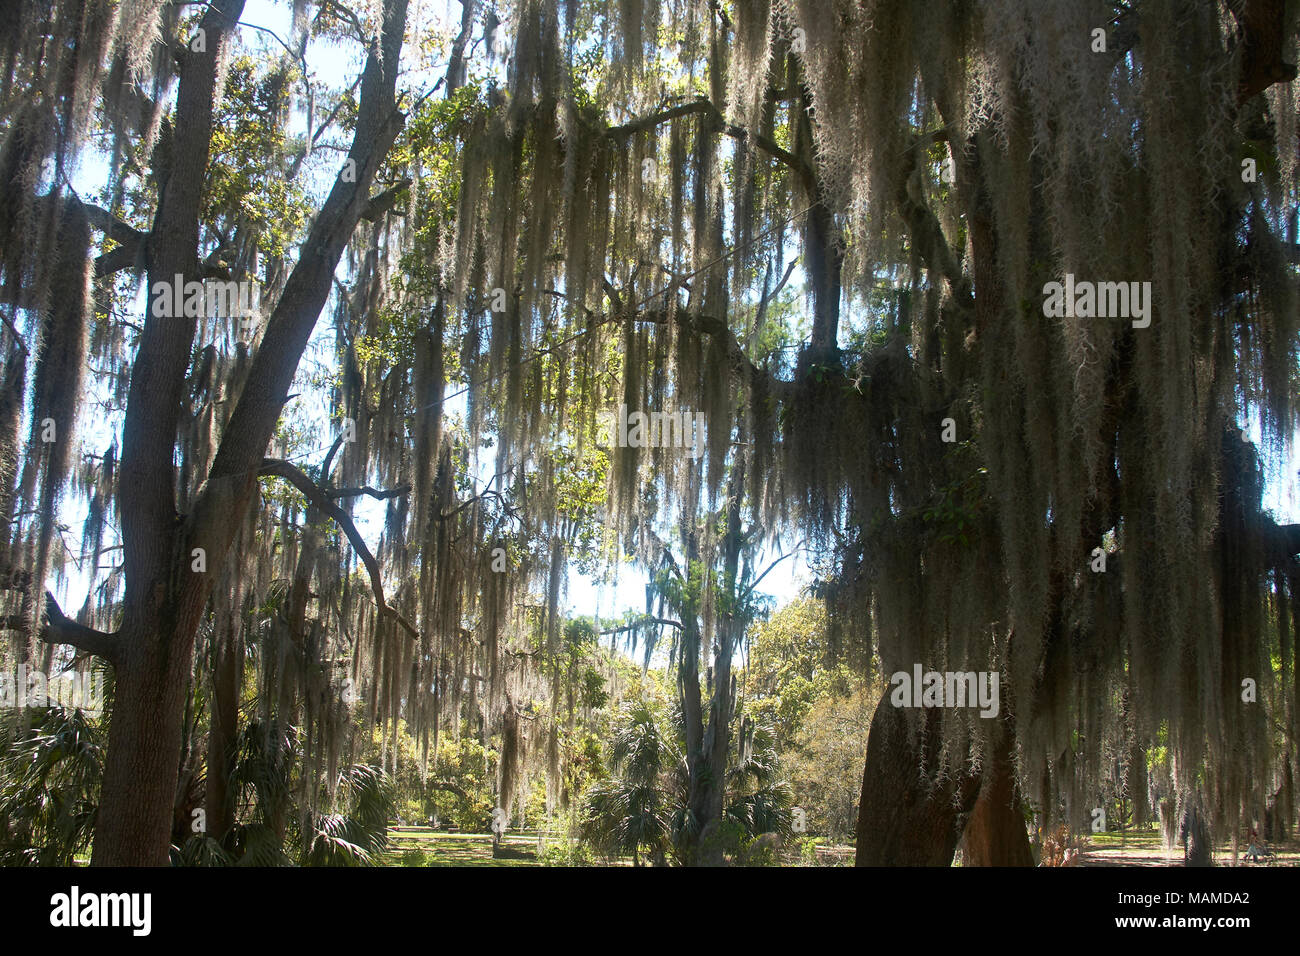 Mossy Oak Trees In City Park New Orleans Louisiana MAMDA2 